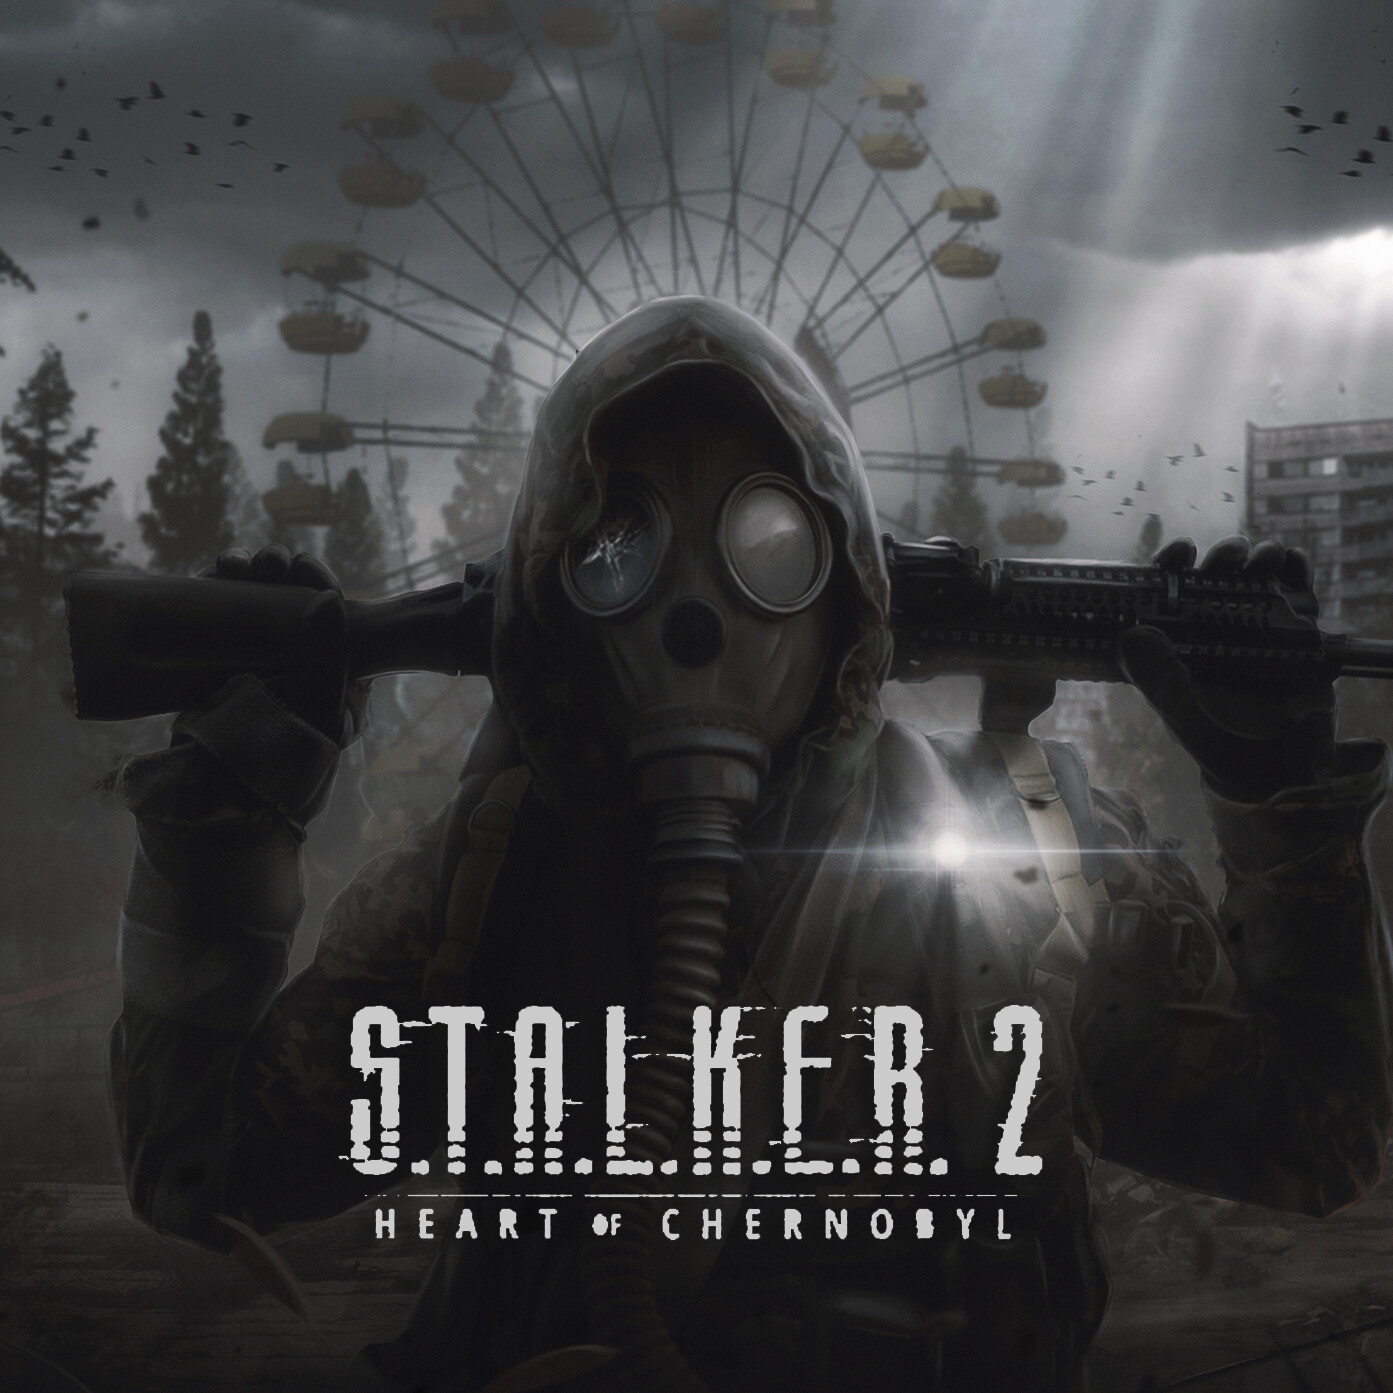 S.T.A.L.K.E.R. 2: Heart of Chornobyl - [Таблица для Cheat Engine]. Чит на запас жизней, патронов, Большая скорость передвижения